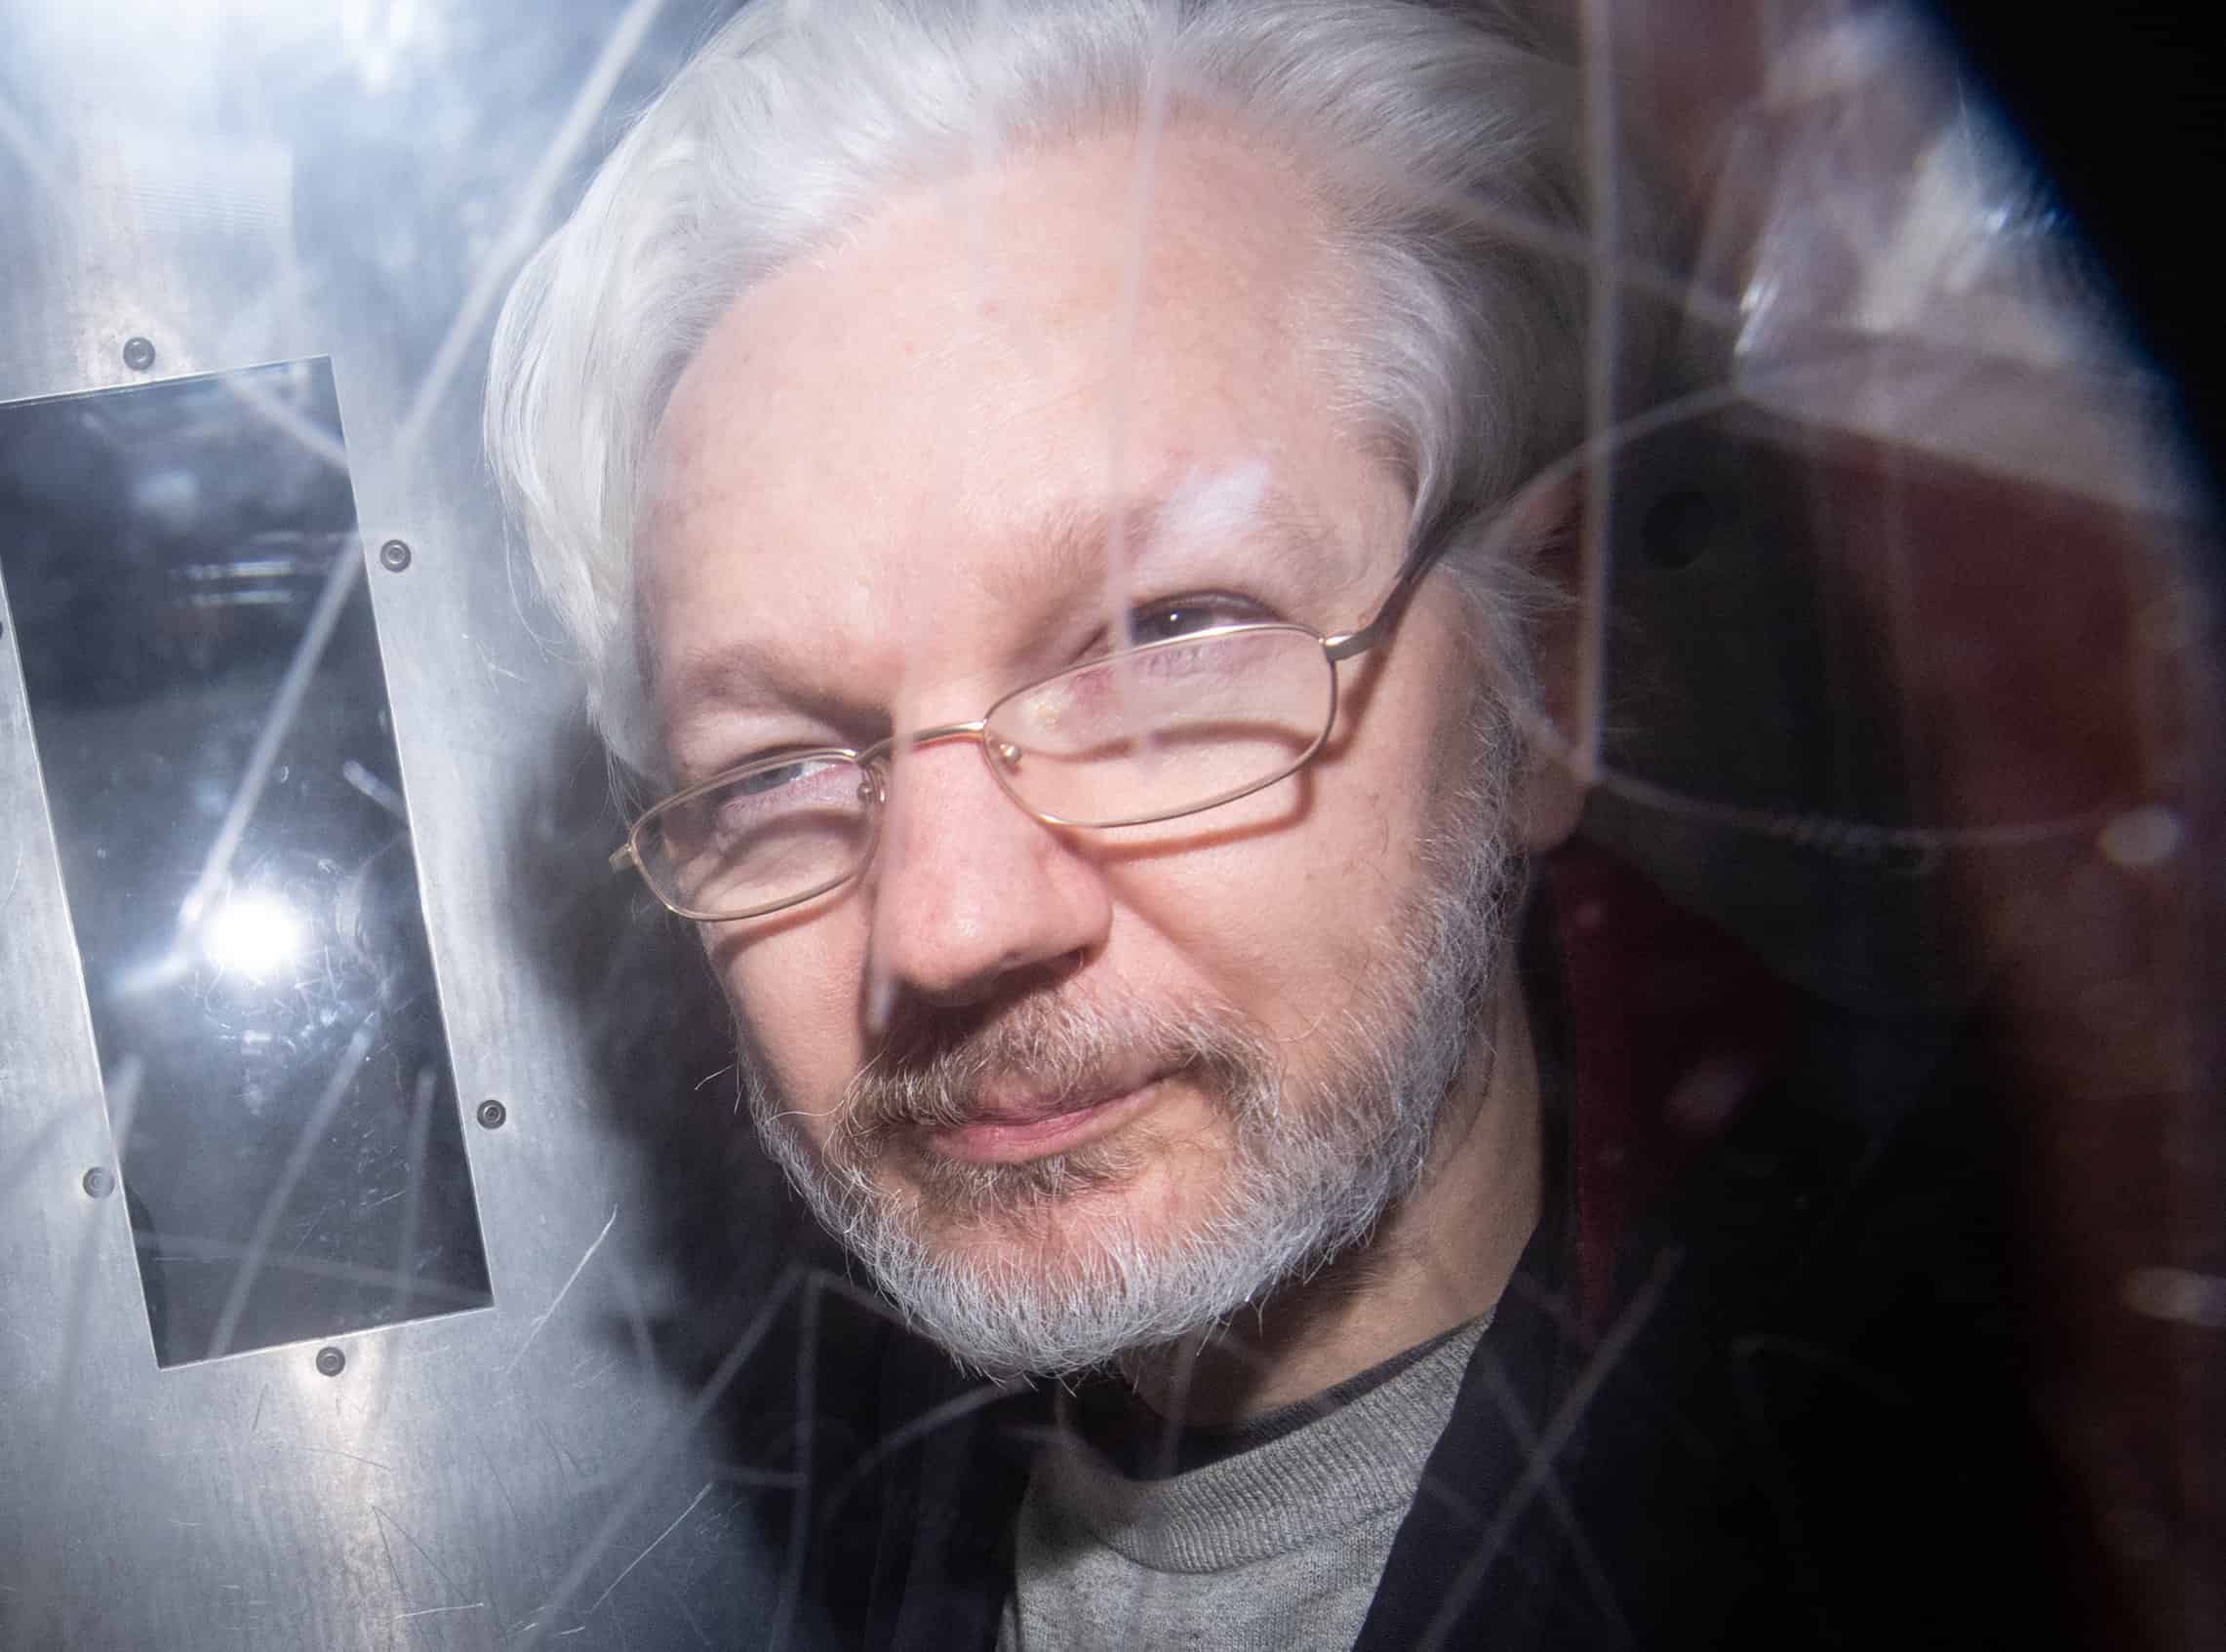 Julian Assange freed from prison